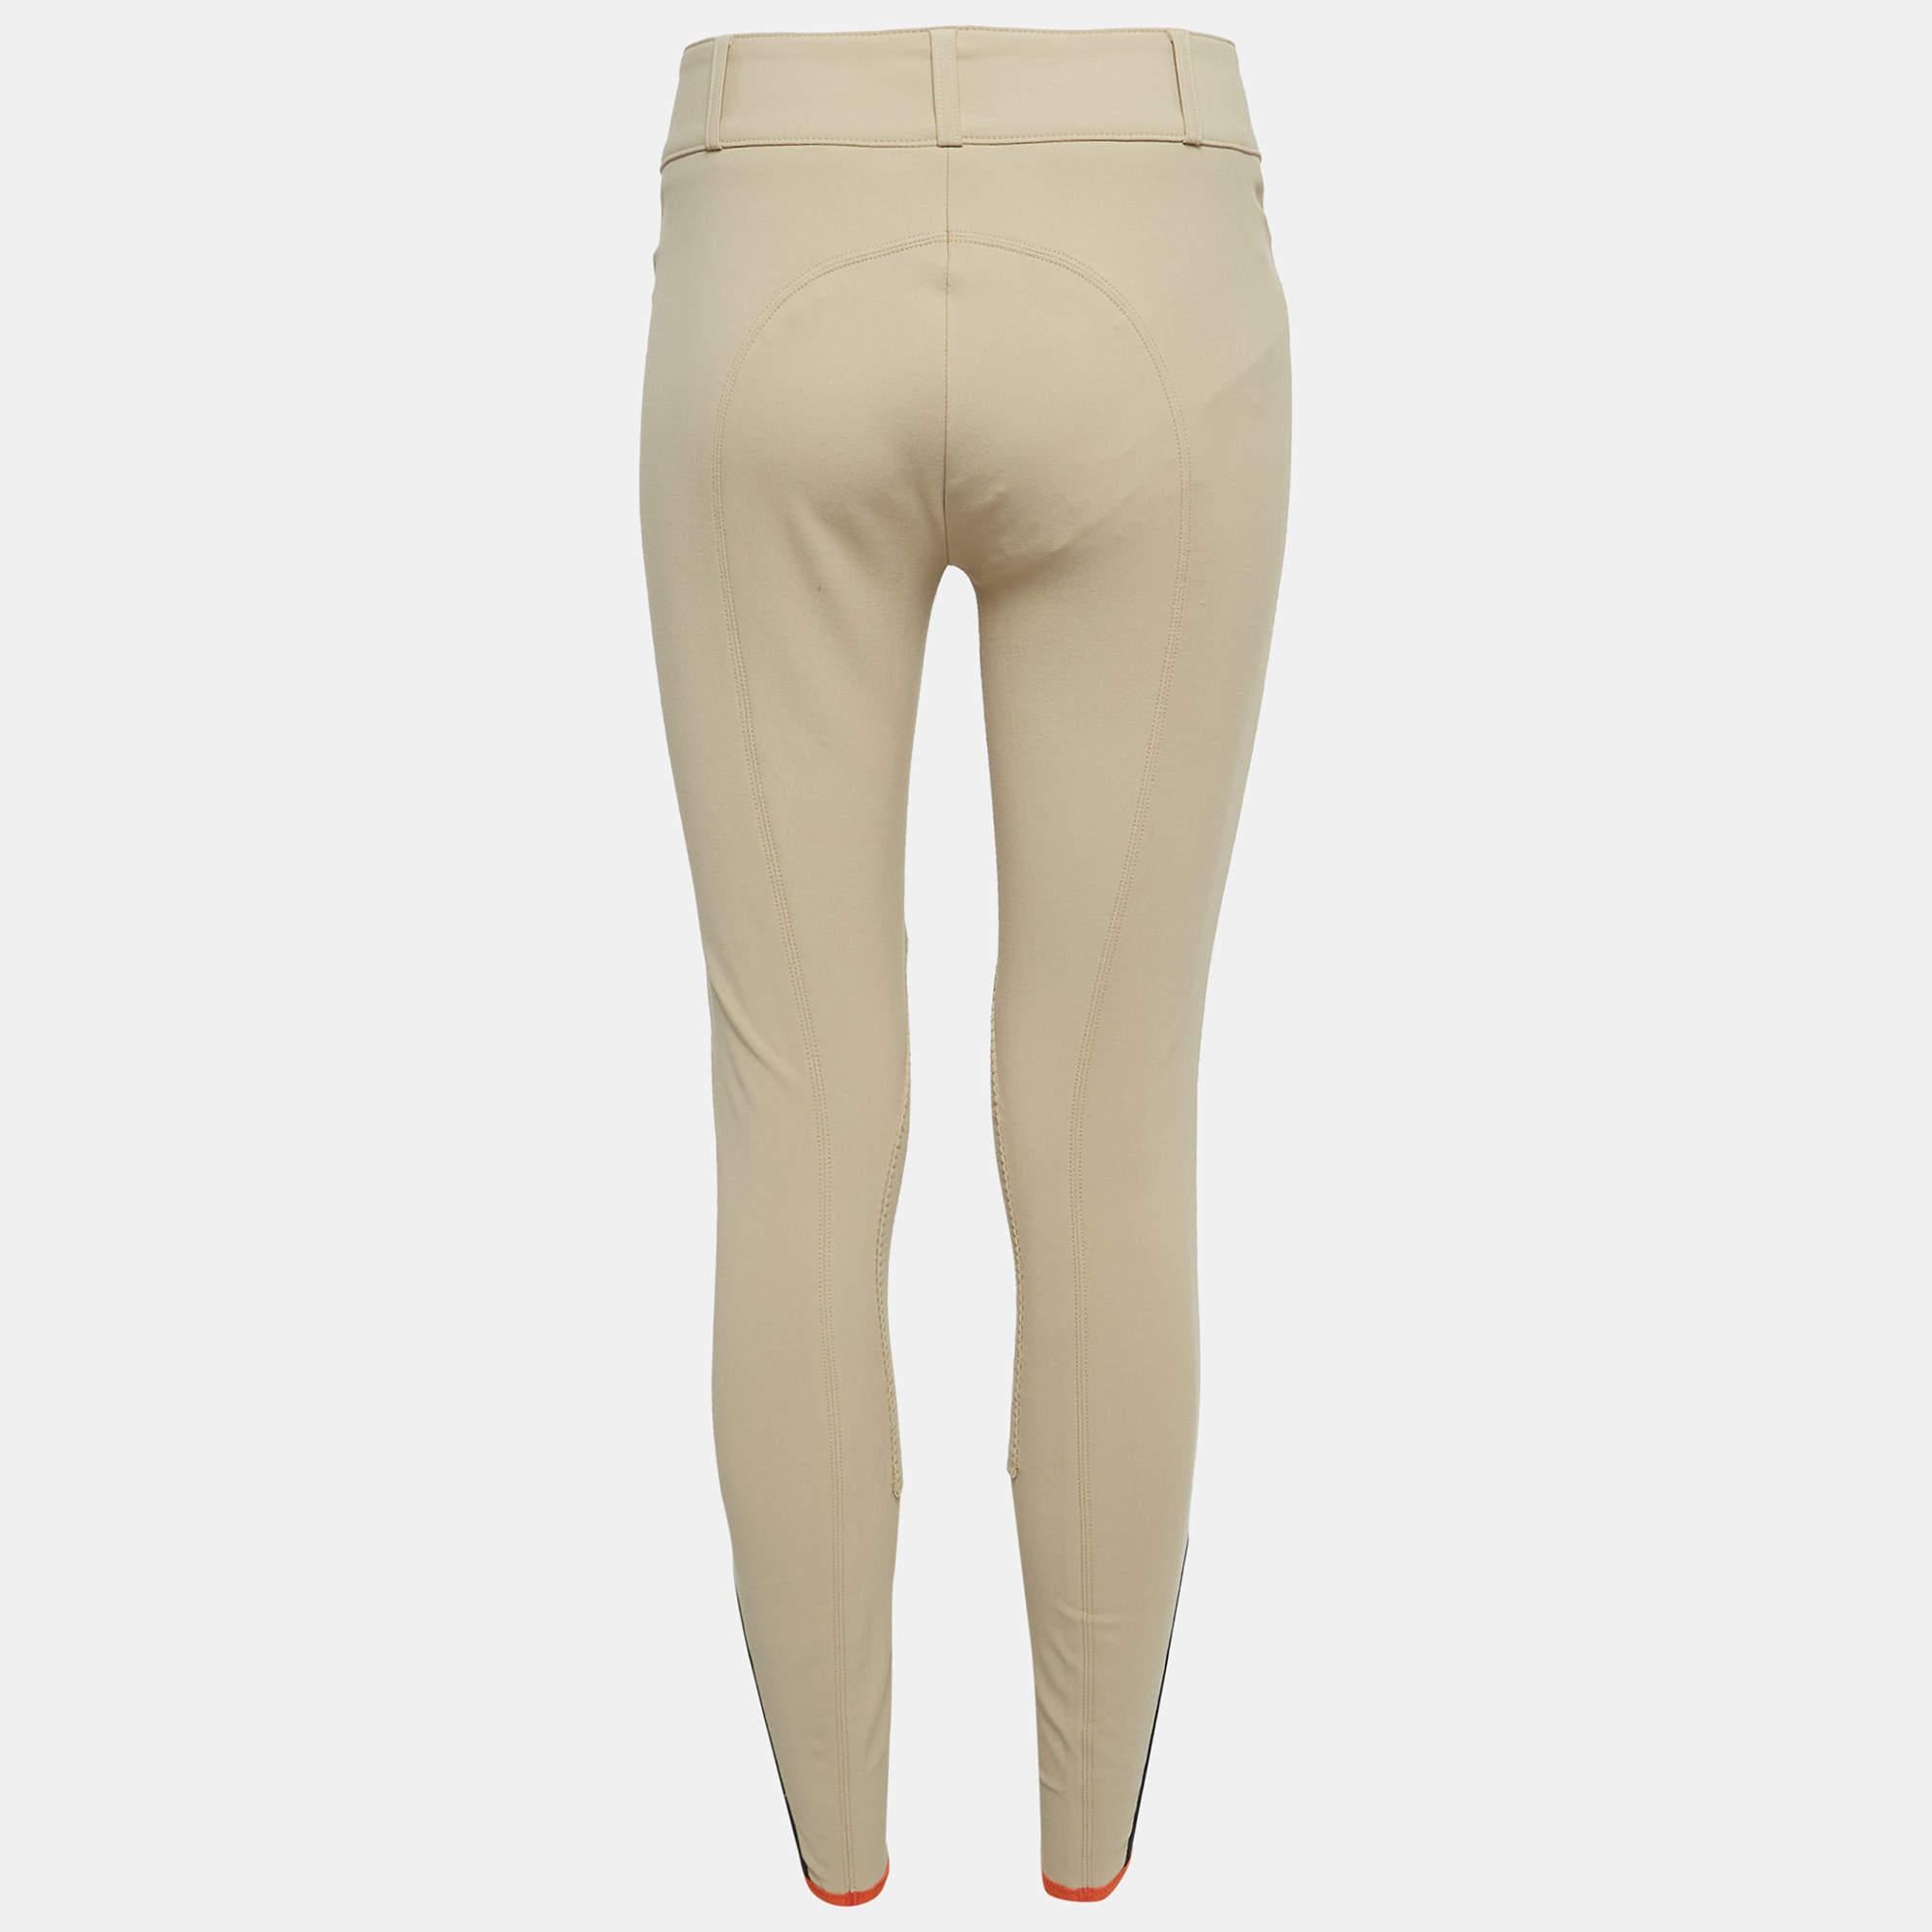 Wie stilvoll und edel sind diese Hermès Reithosen! Die Hose ist aus hochwertigen Stoffen gefertigt und hat eine tolle Passform. Ergänzen Sie sie mit einem schicken Crop-Top.

